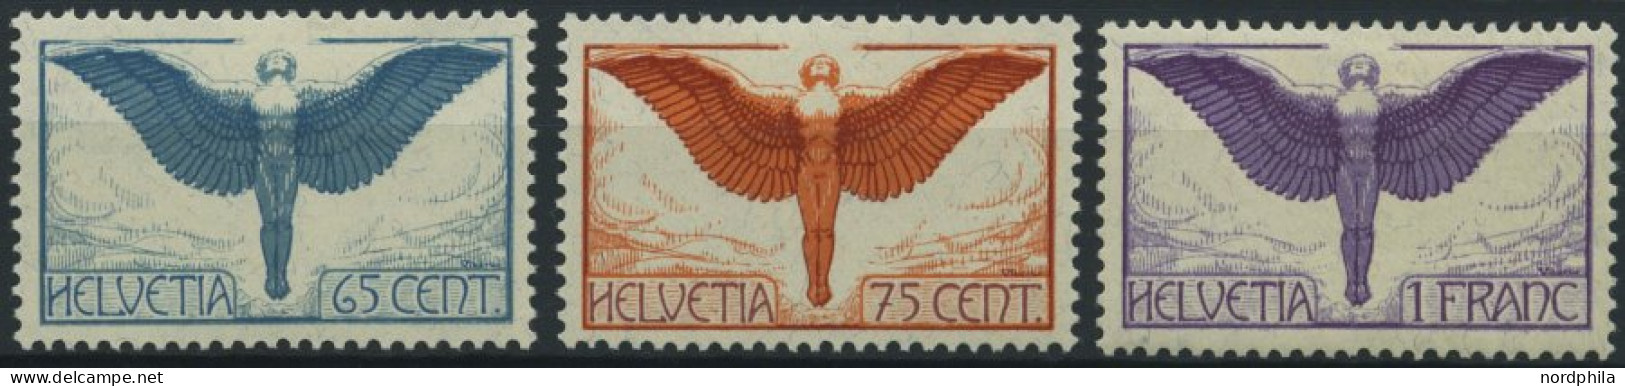 SCHWEIZ BUNDESPOST 189-91x *, 1924, Flugpostmarken, Gewöhnliches Papier, Falzrest, Prachtsatz - Unused Stamps